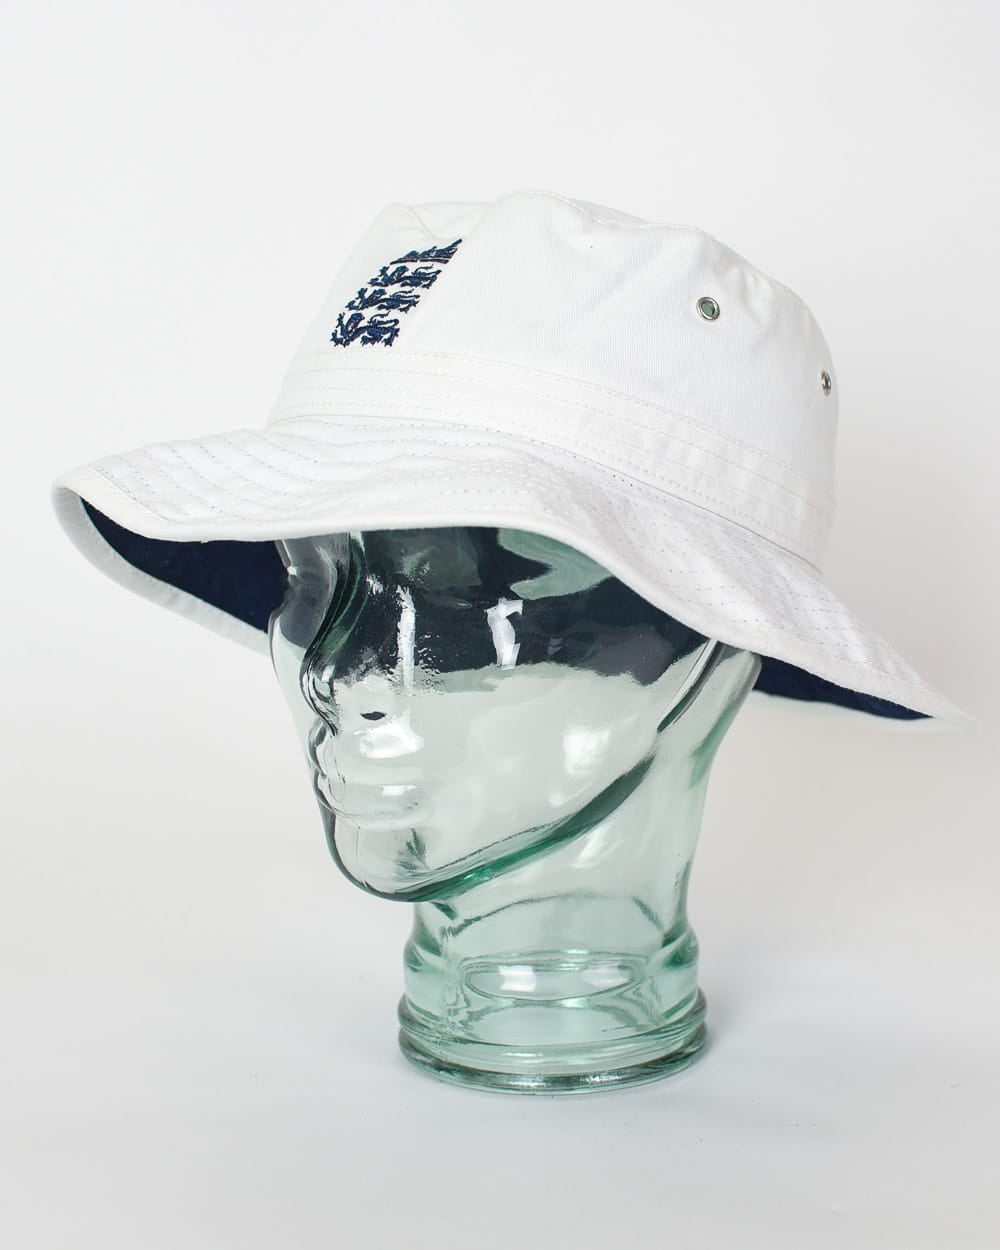 White Adidas England Cricket Hat